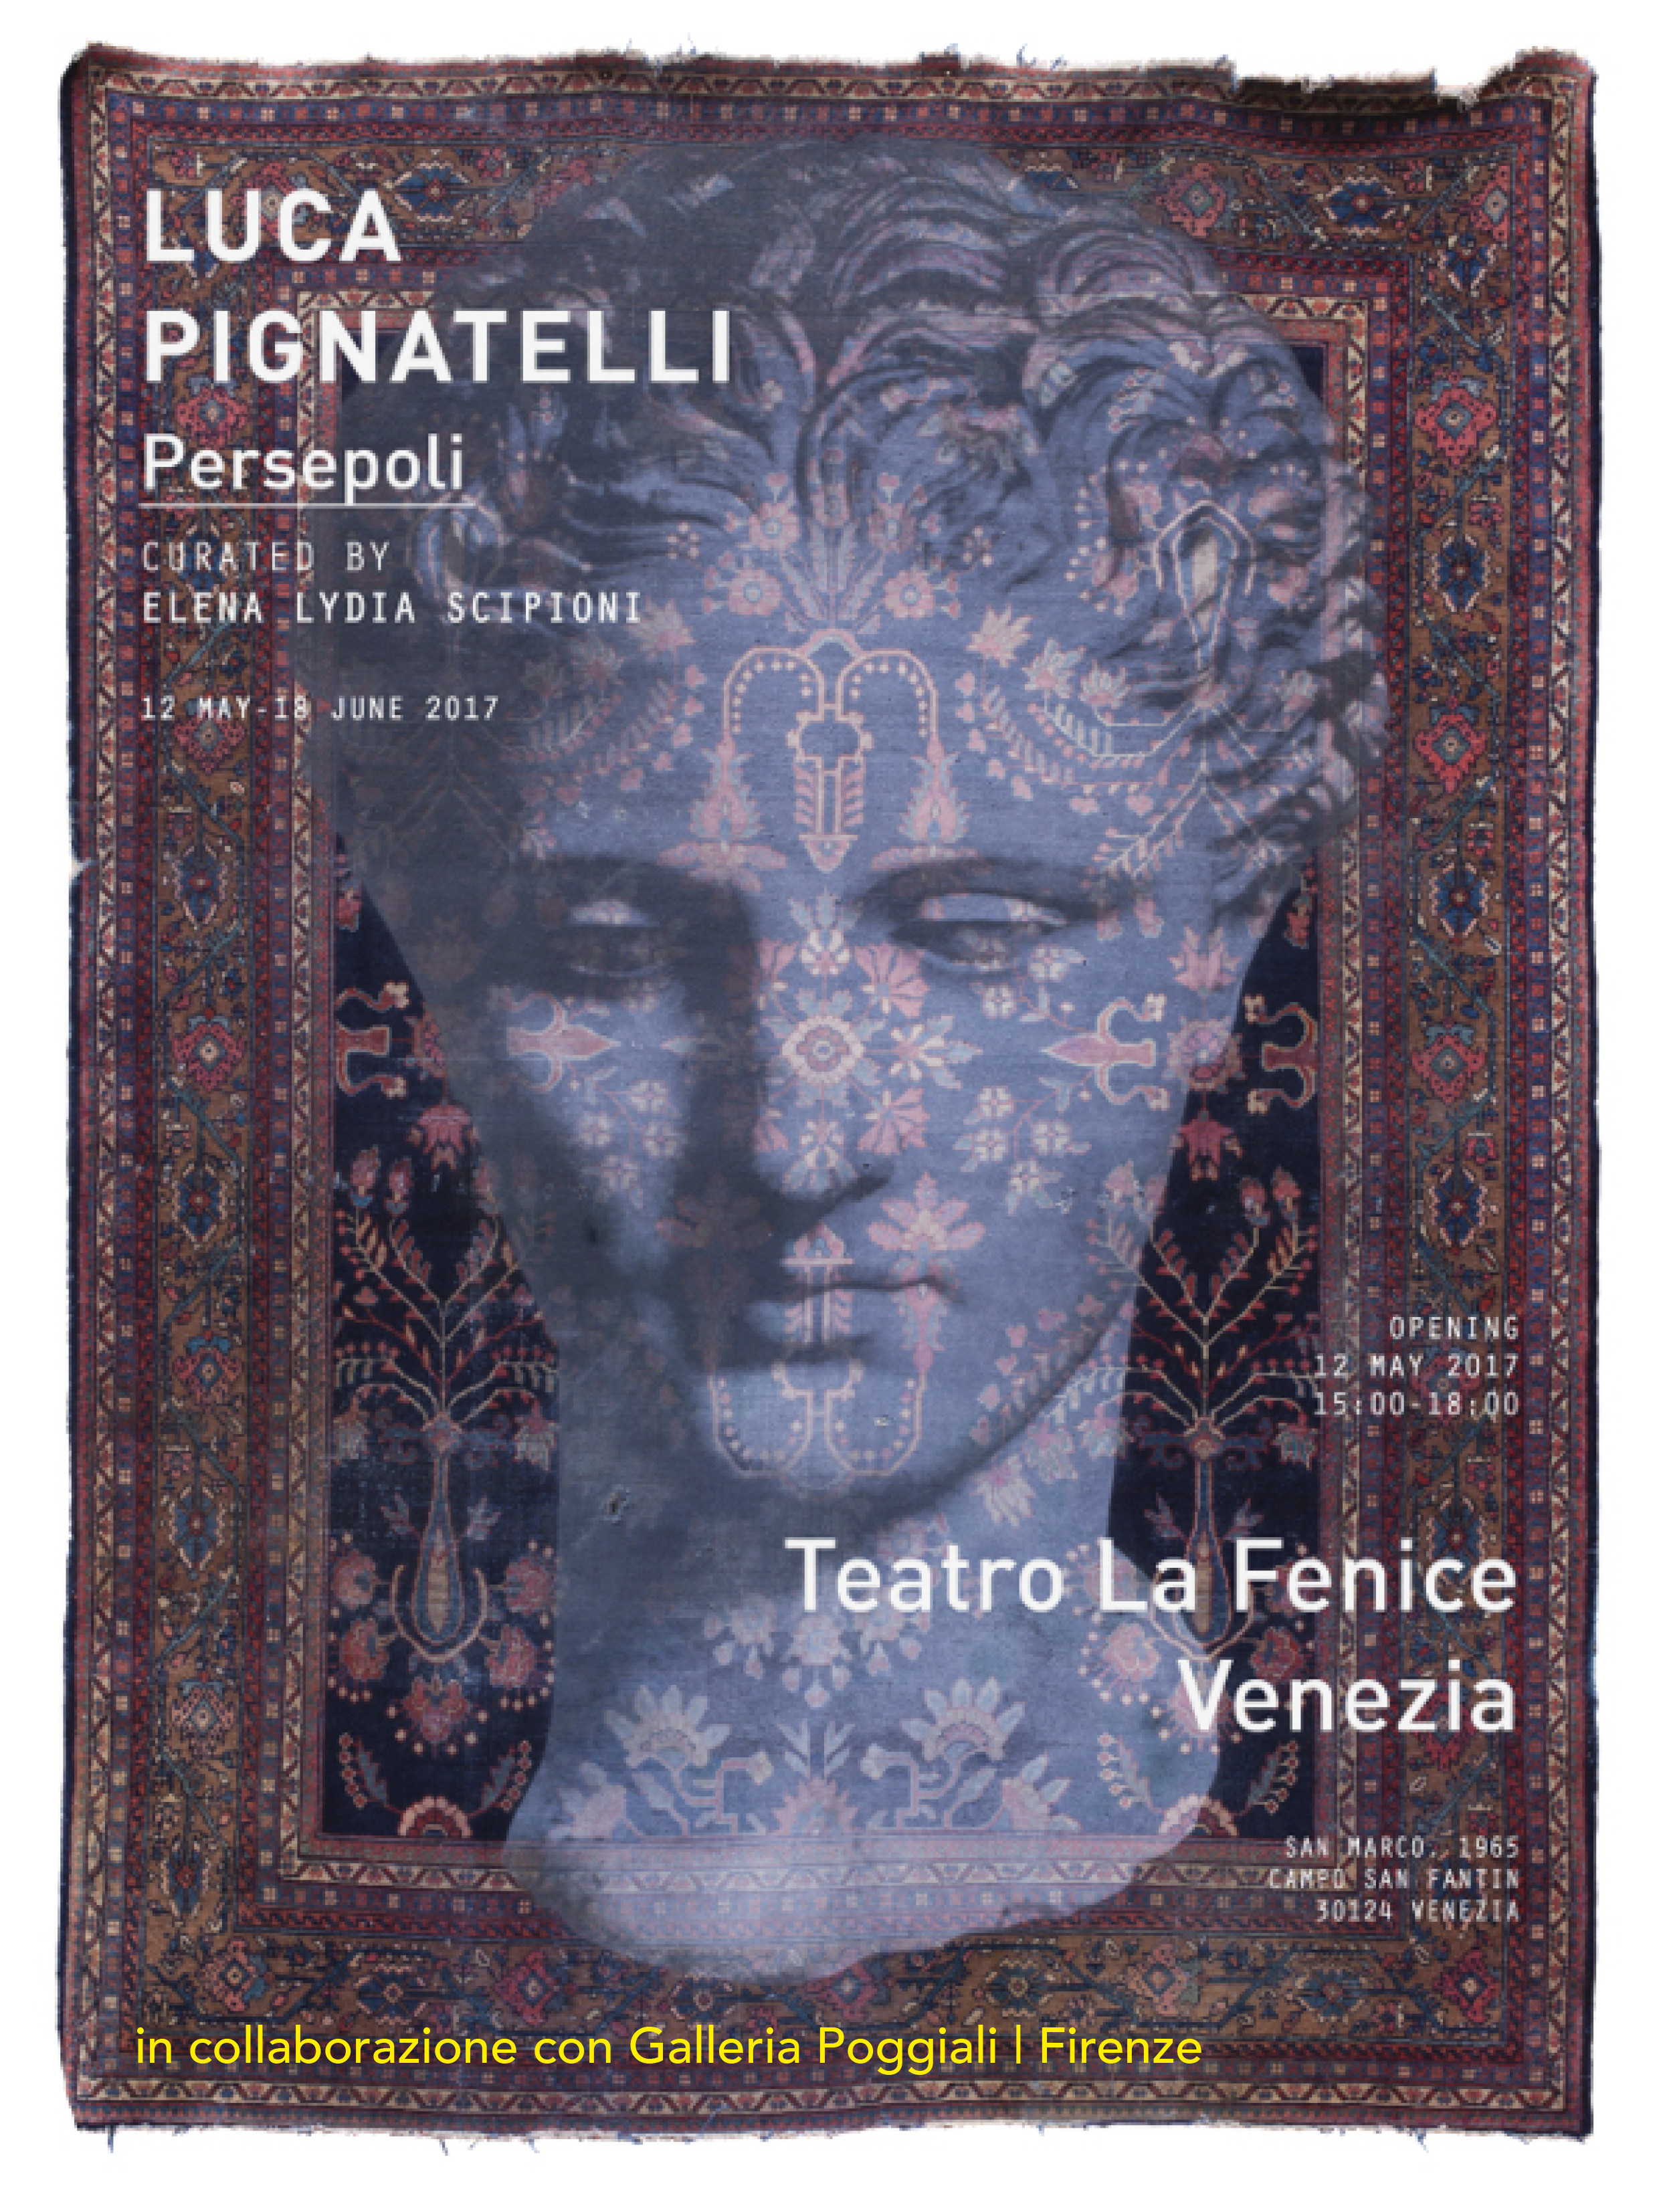 Luca Pignatelli | Teatro La Fenice Venezia